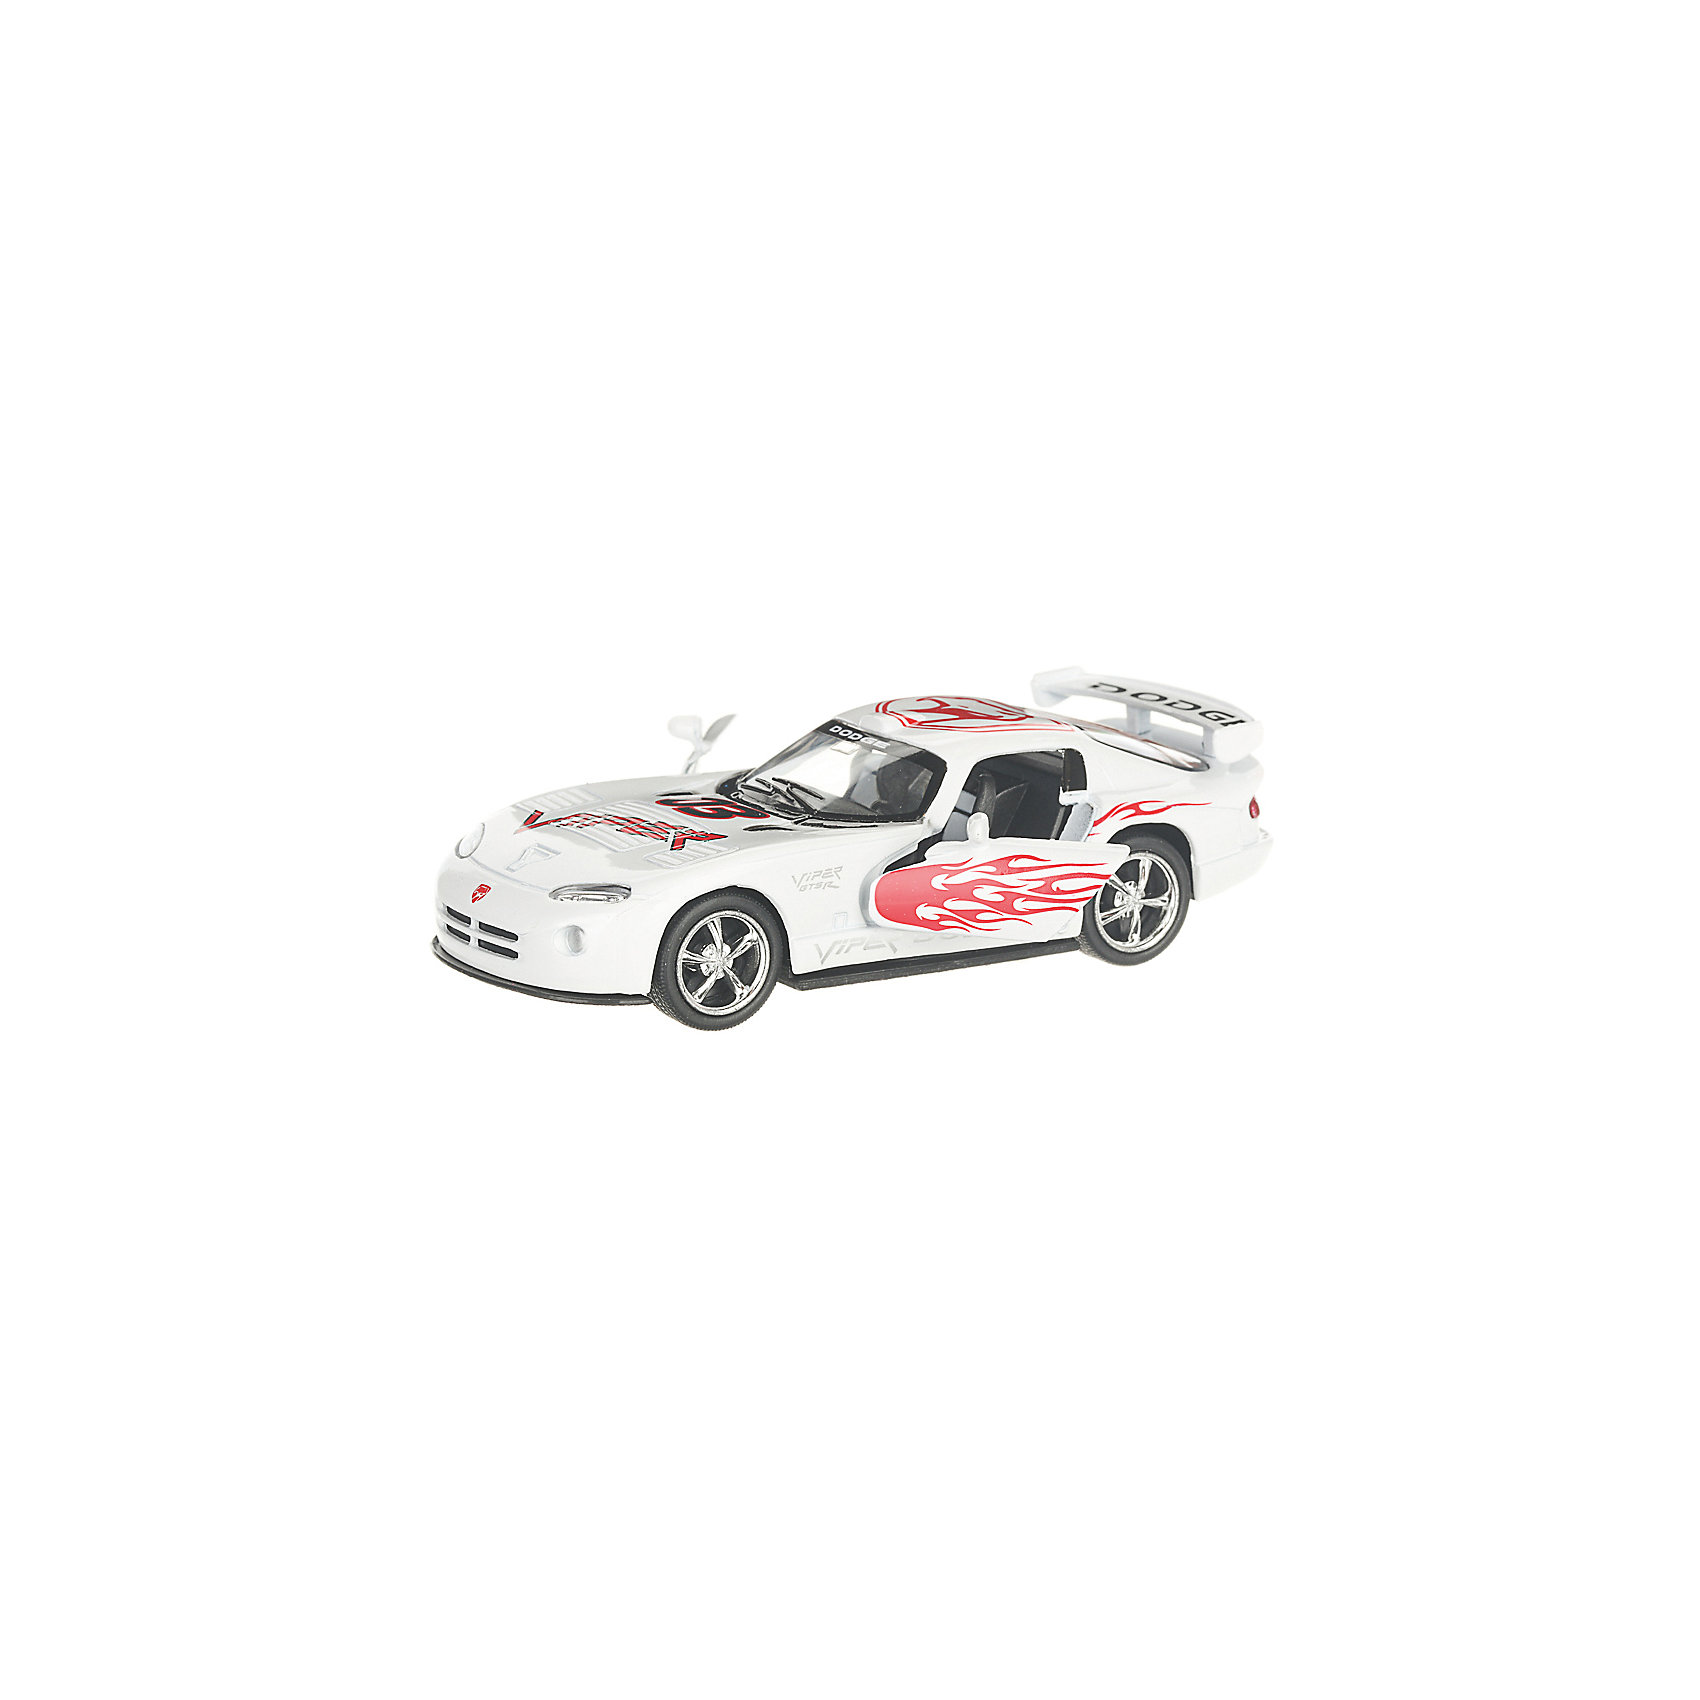 Коллекционная машинка Dodge Viper раскрашенный, белая Serinity Toys 13232999